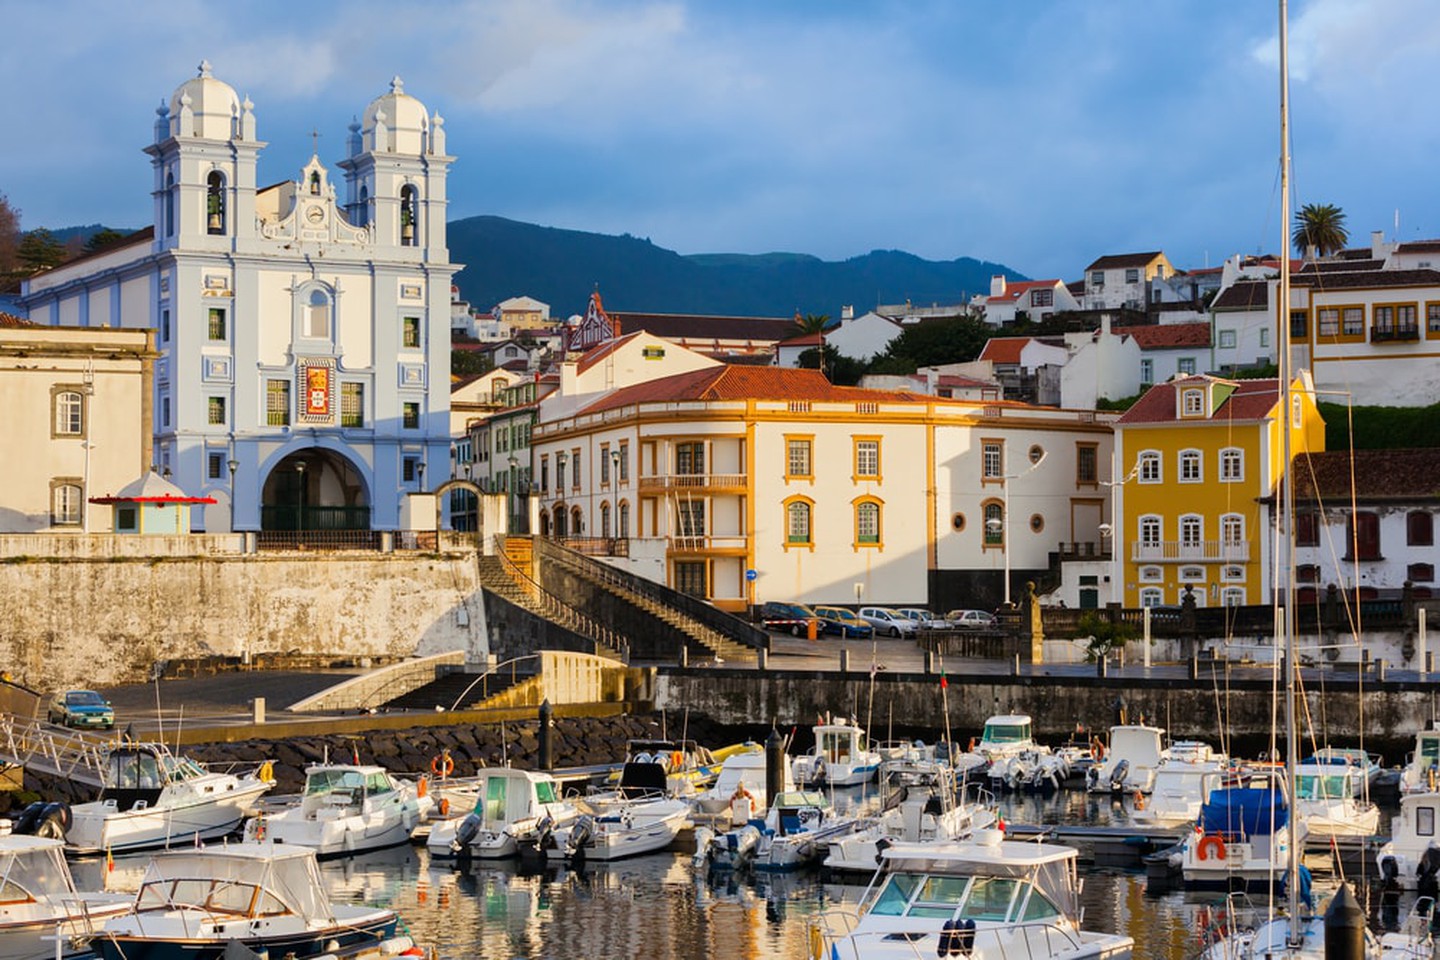 مدن البرتغال